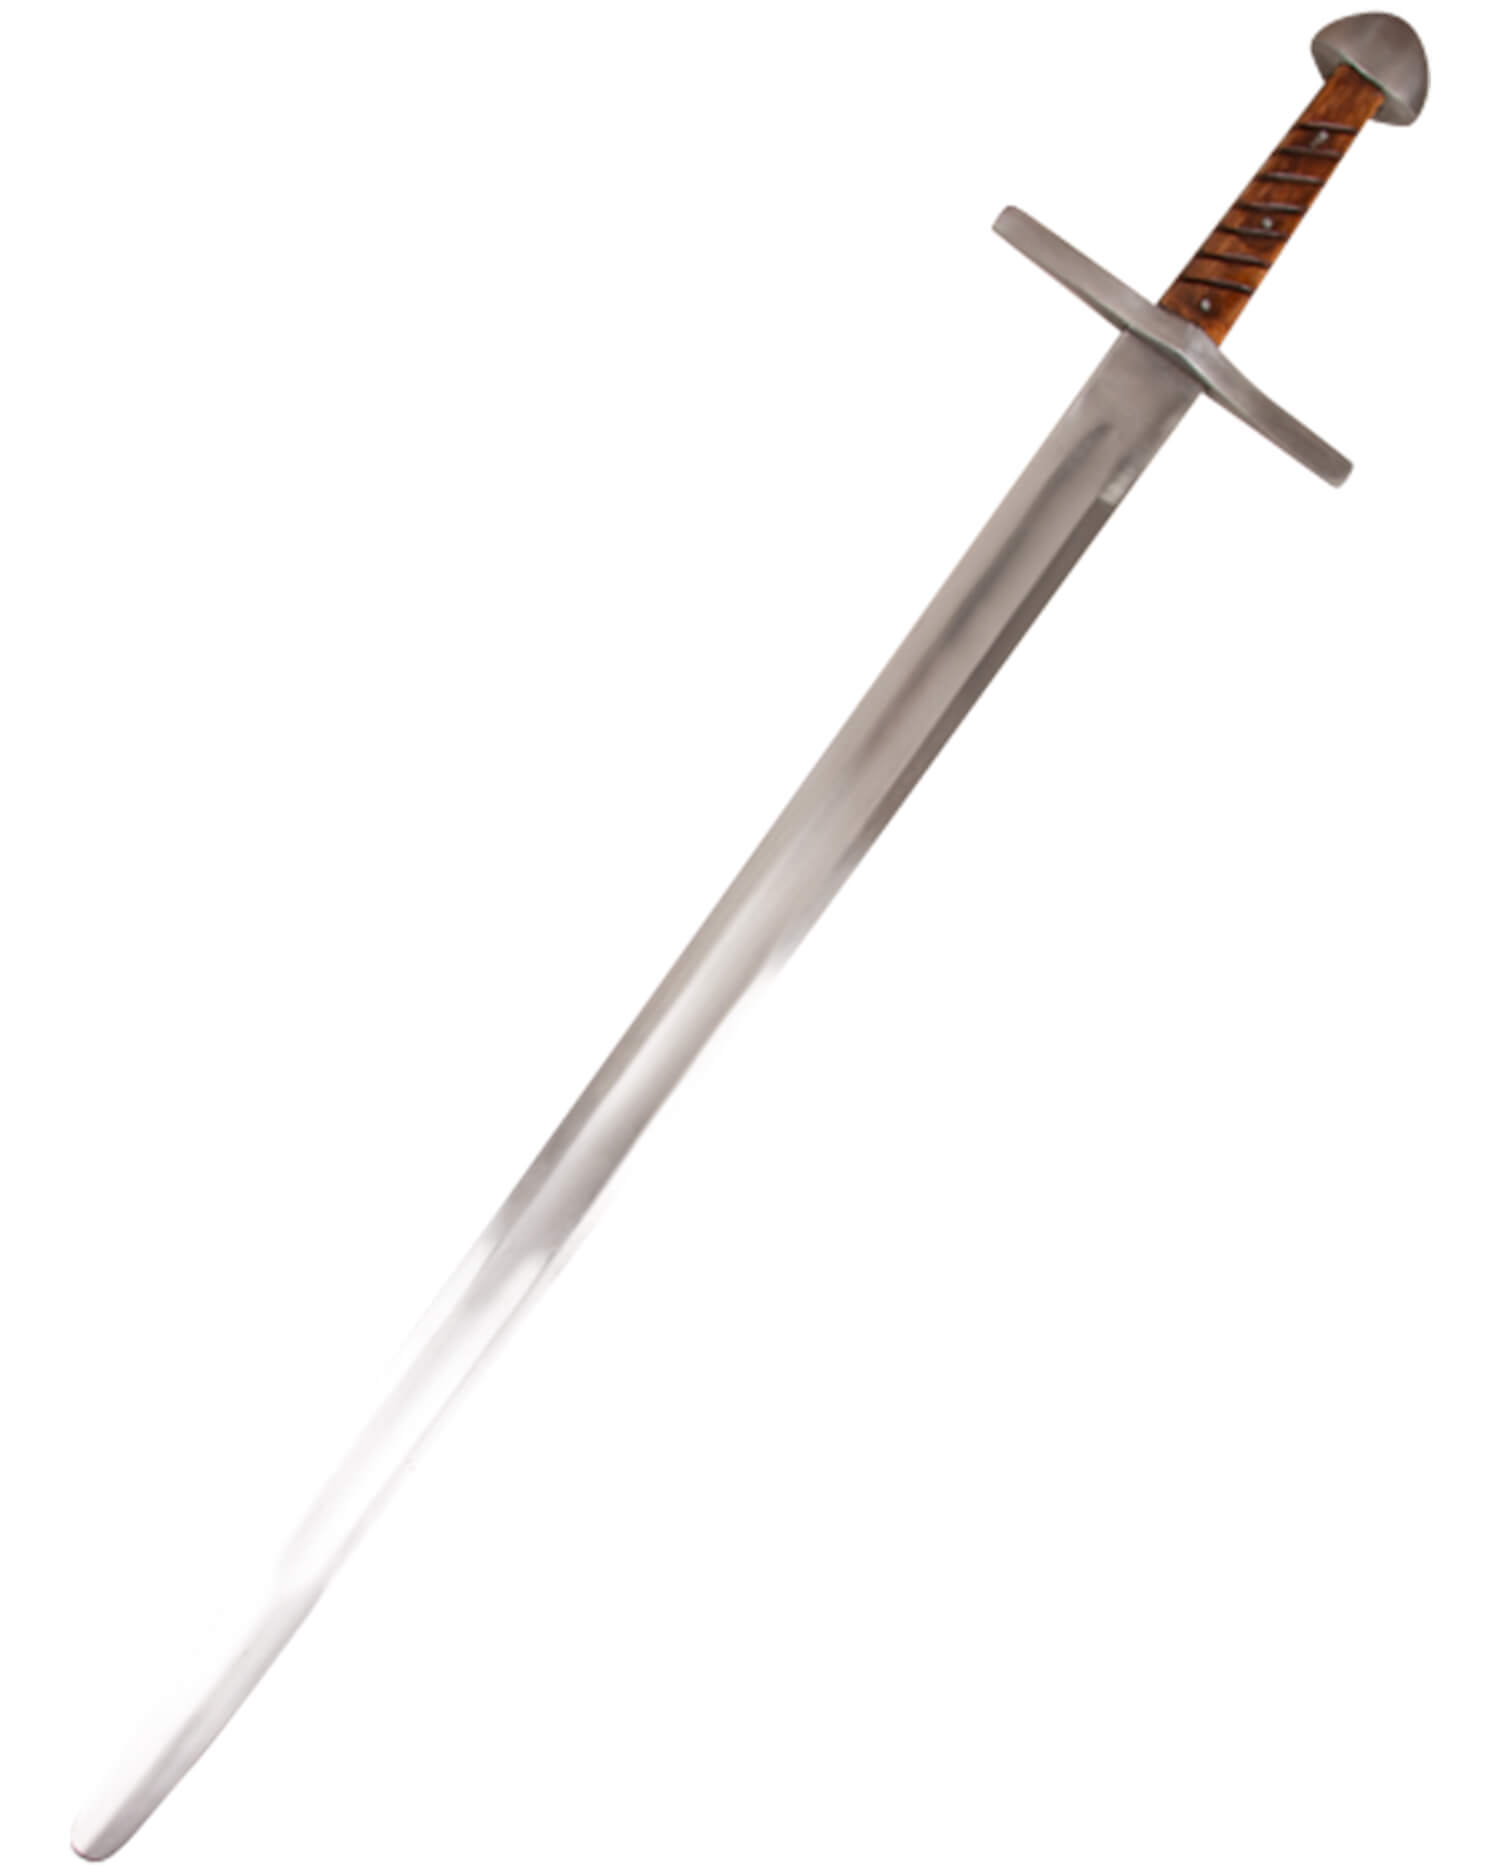 Balduin stage fight sword